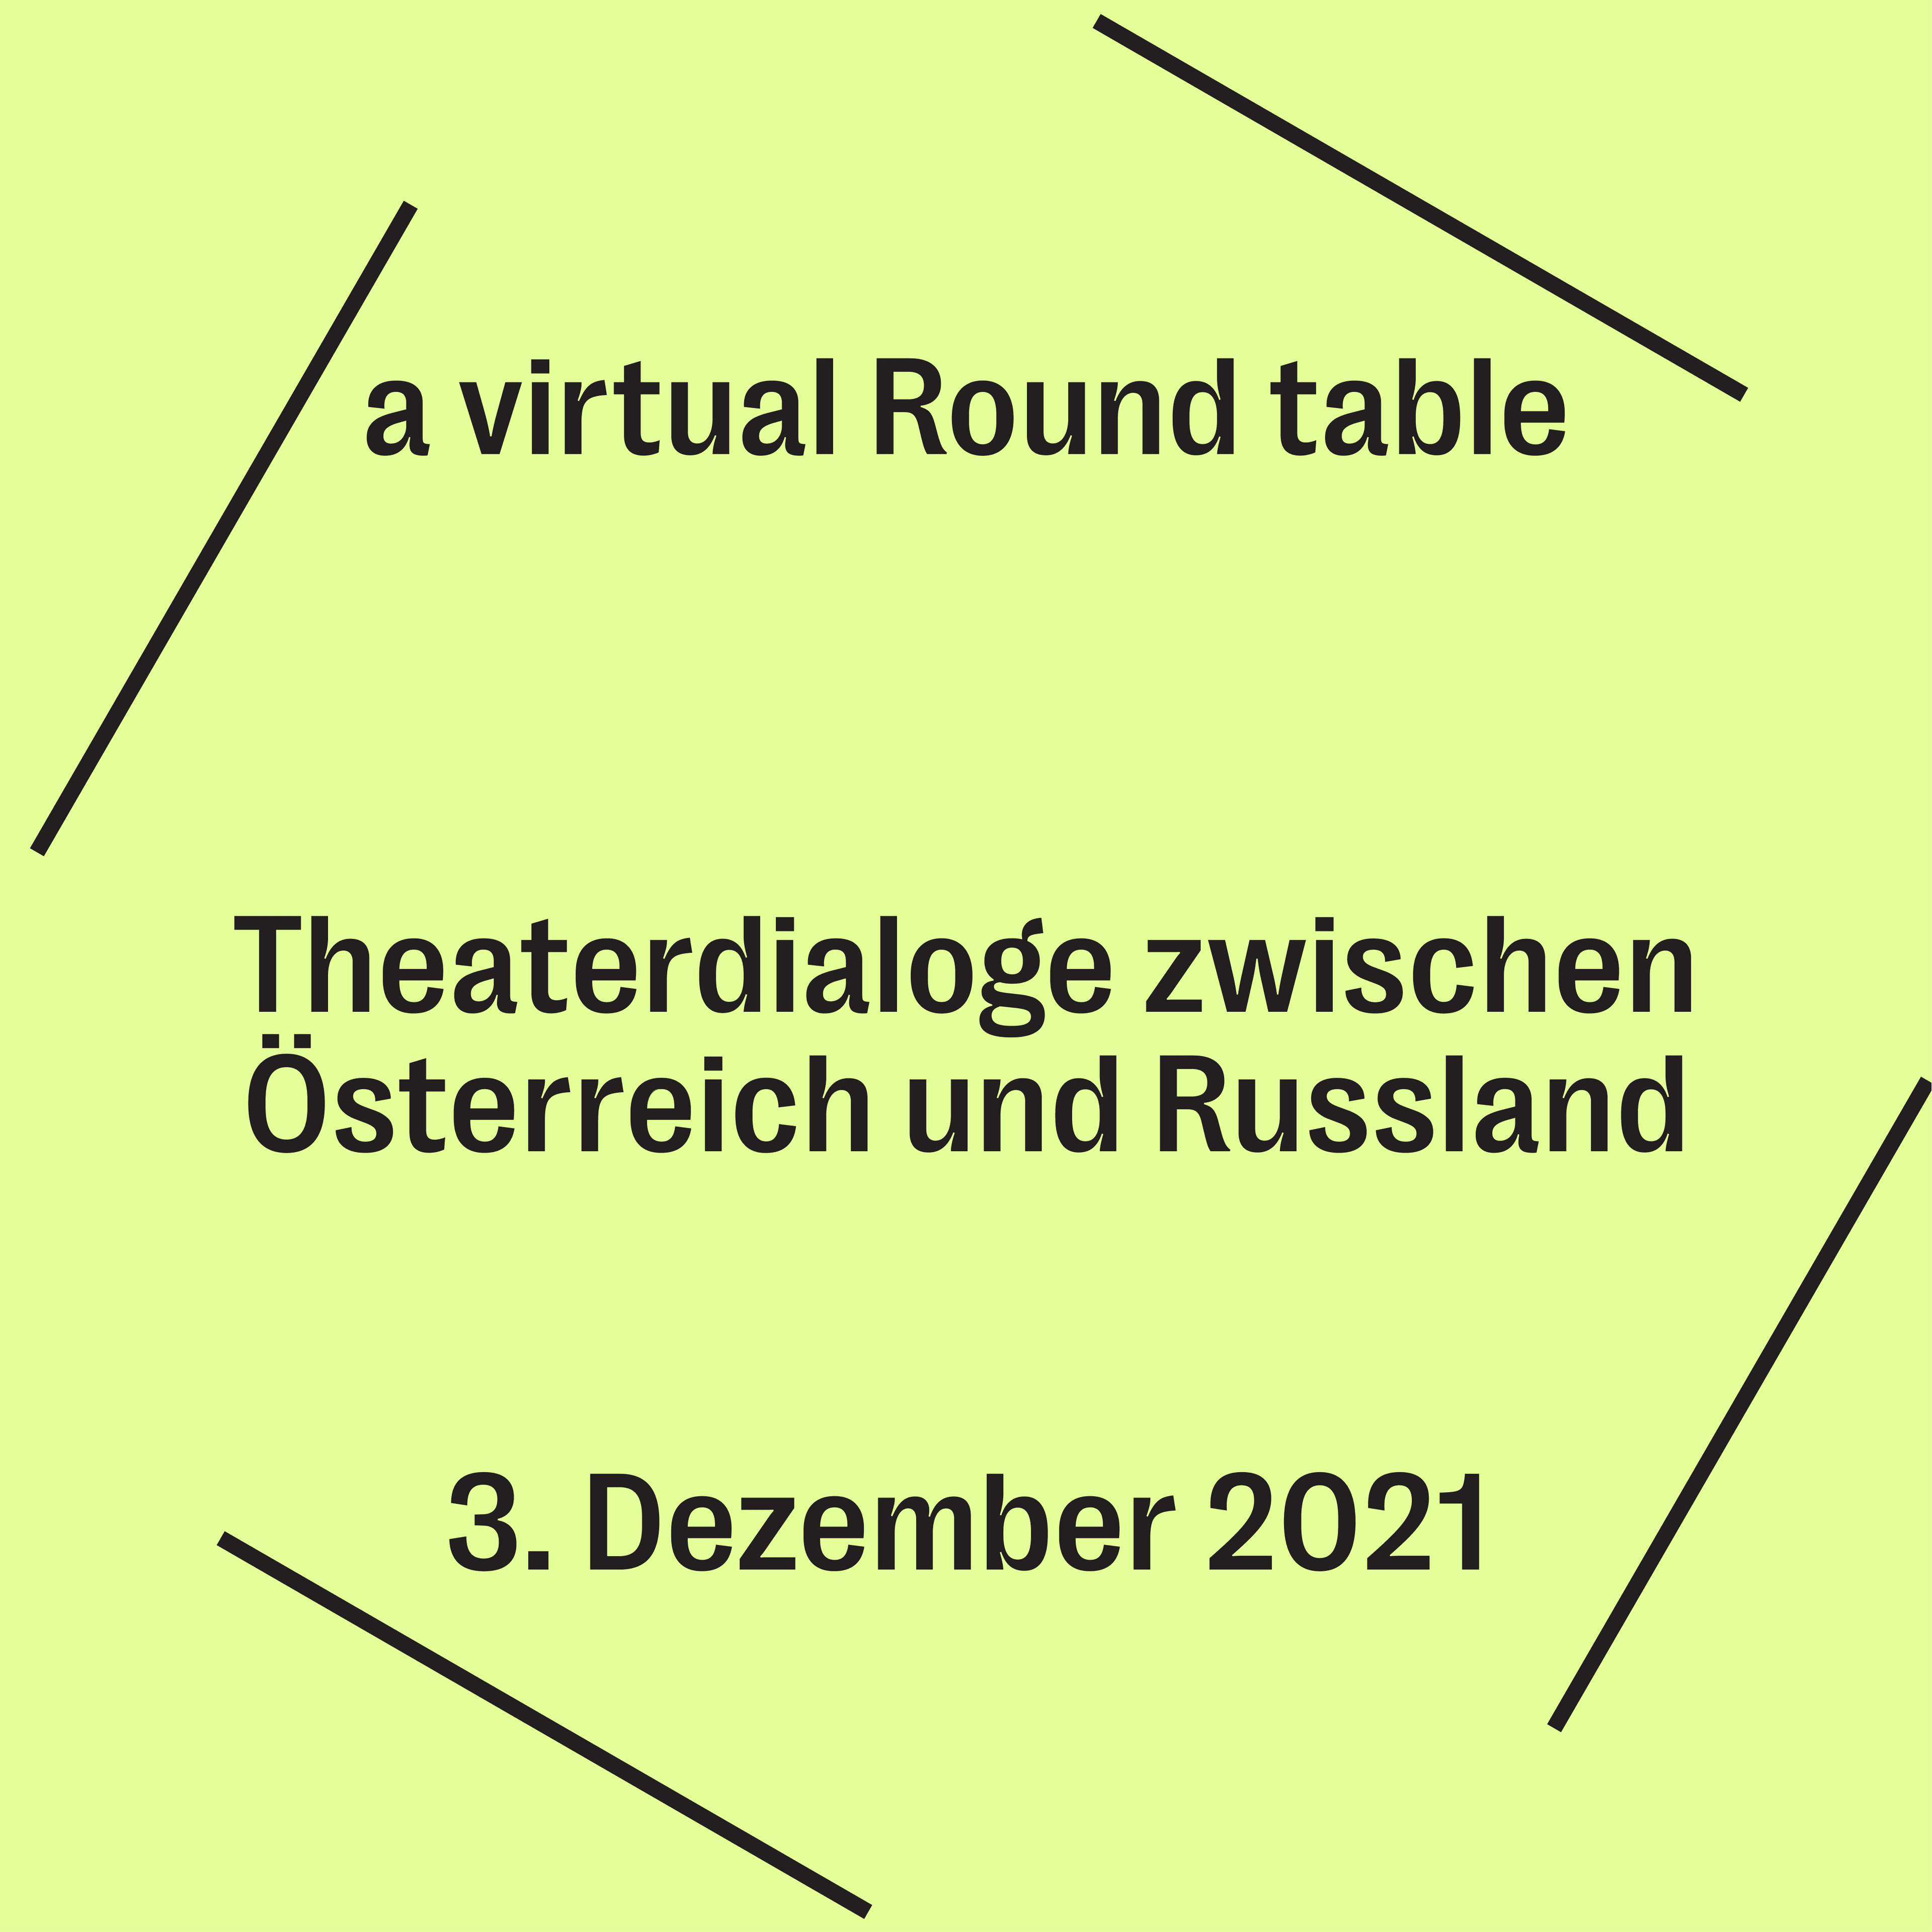 Theaterdialoge zwischen Österreich und Russland